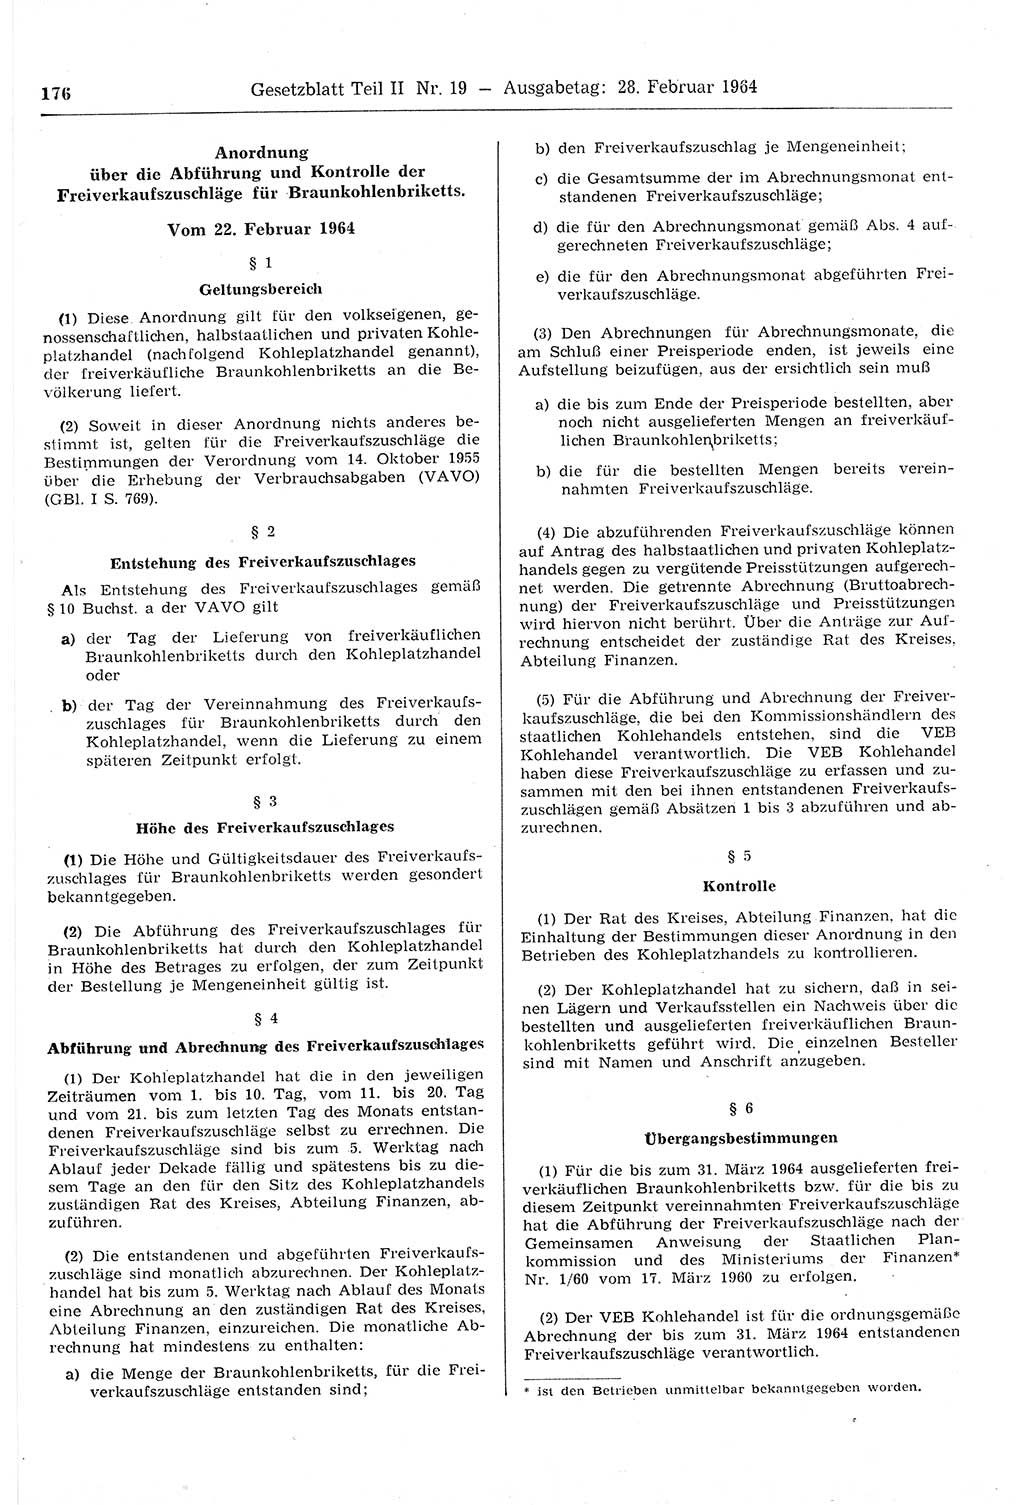 Gesetzblatt (GBl.) der Deutschen Demokratischen Republik (DDR) Teil ⅠⅠ 1964, Seite 176 (GBl. DDR ⅠⅠ 1964, S. 176)